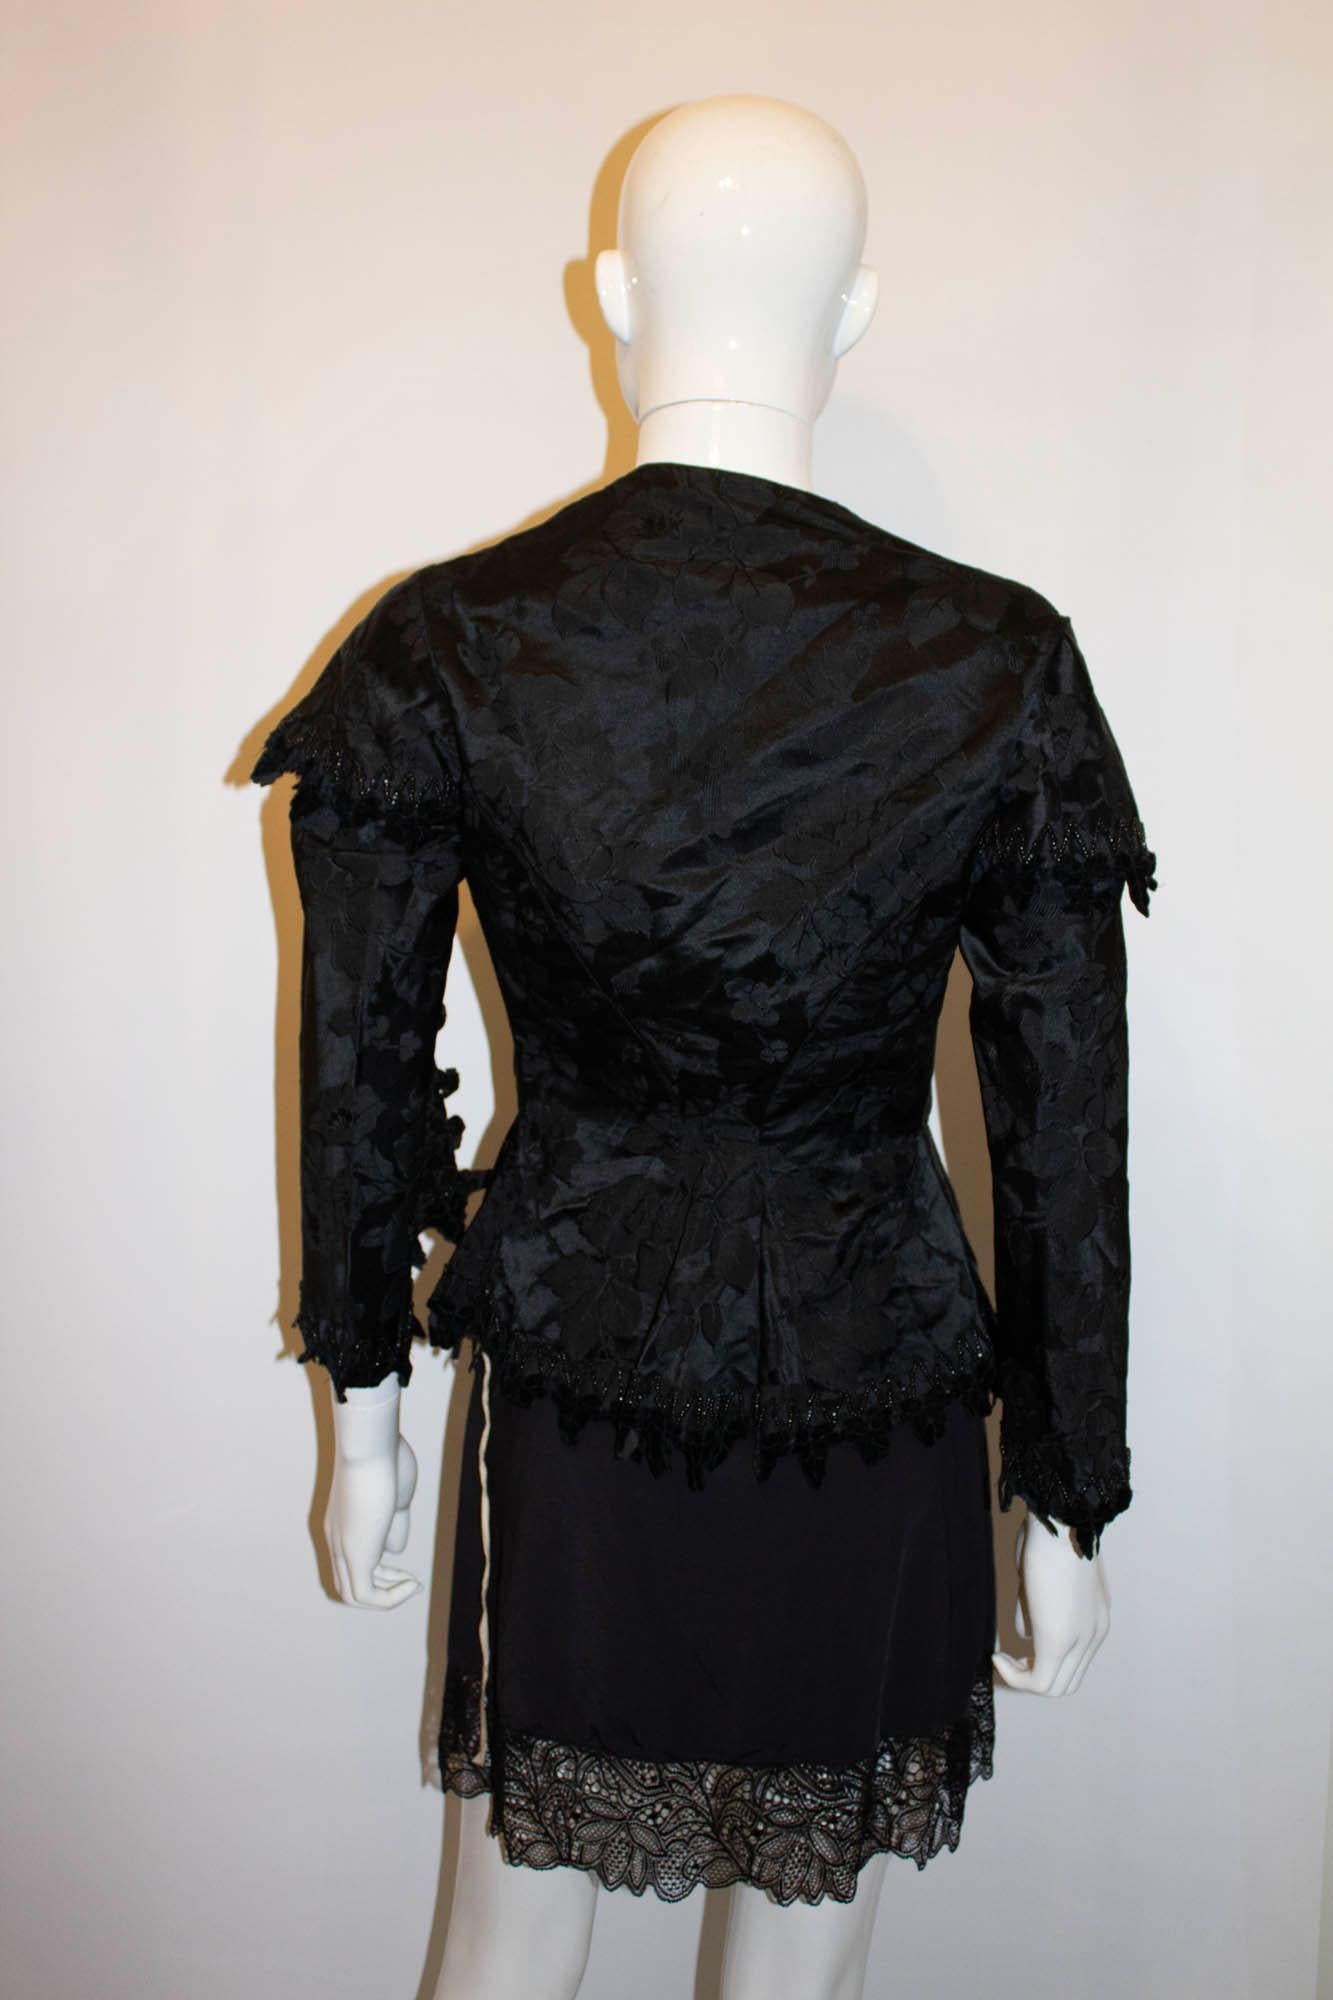 Une veste victorienne en soie noire, merveilleuse et portable. La veste a une forme magnifique, avec un désossage, des détails en perles et une fermeture à crochets et à œillets. Mesures : Poitrine jusqu'à 35'', longueur 25''.